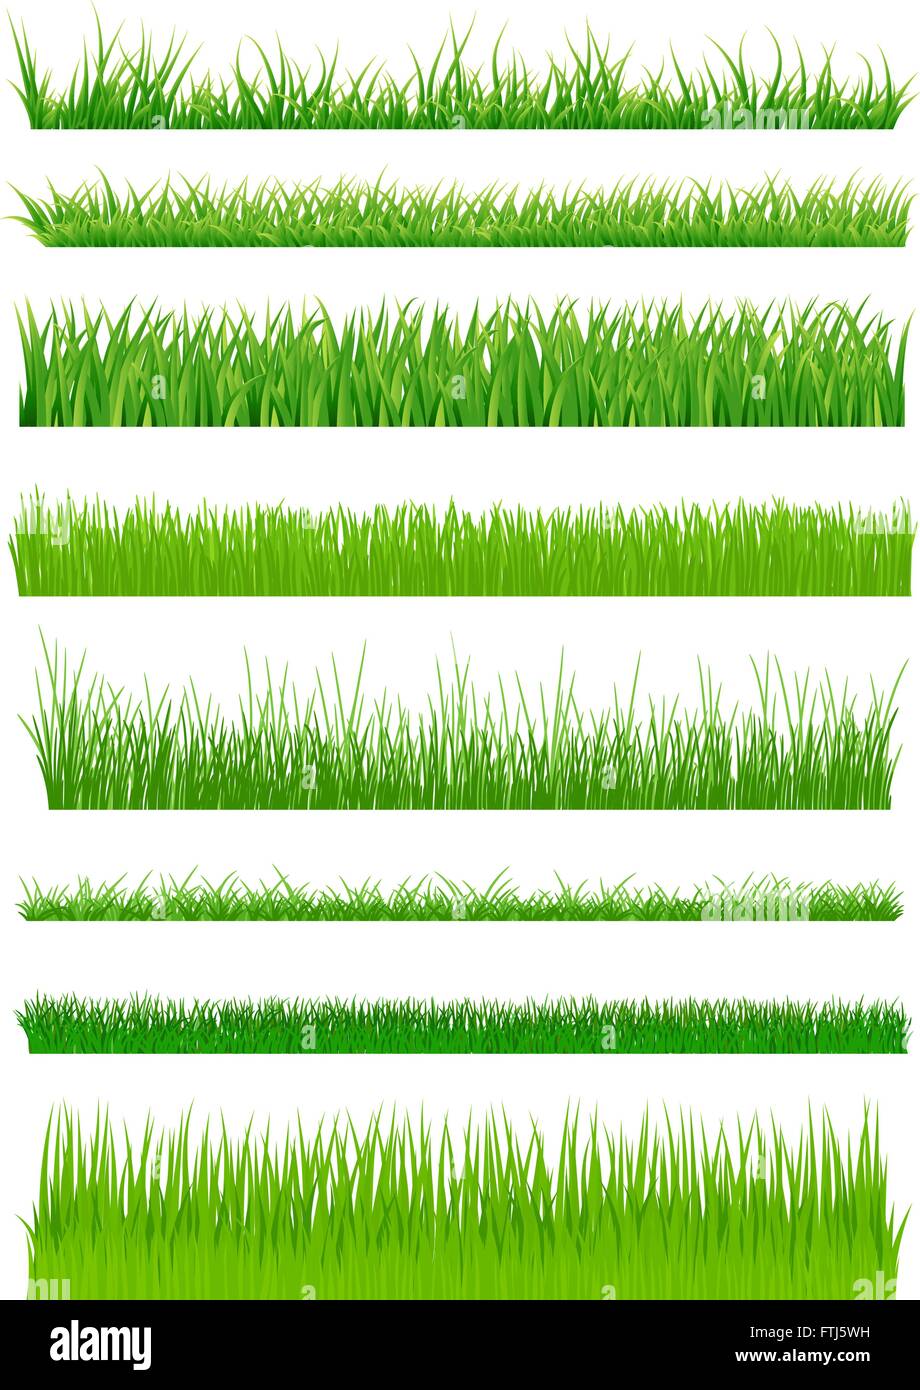 Grünen Rasen gesetzt. Vektor-illustration Stock Vektor